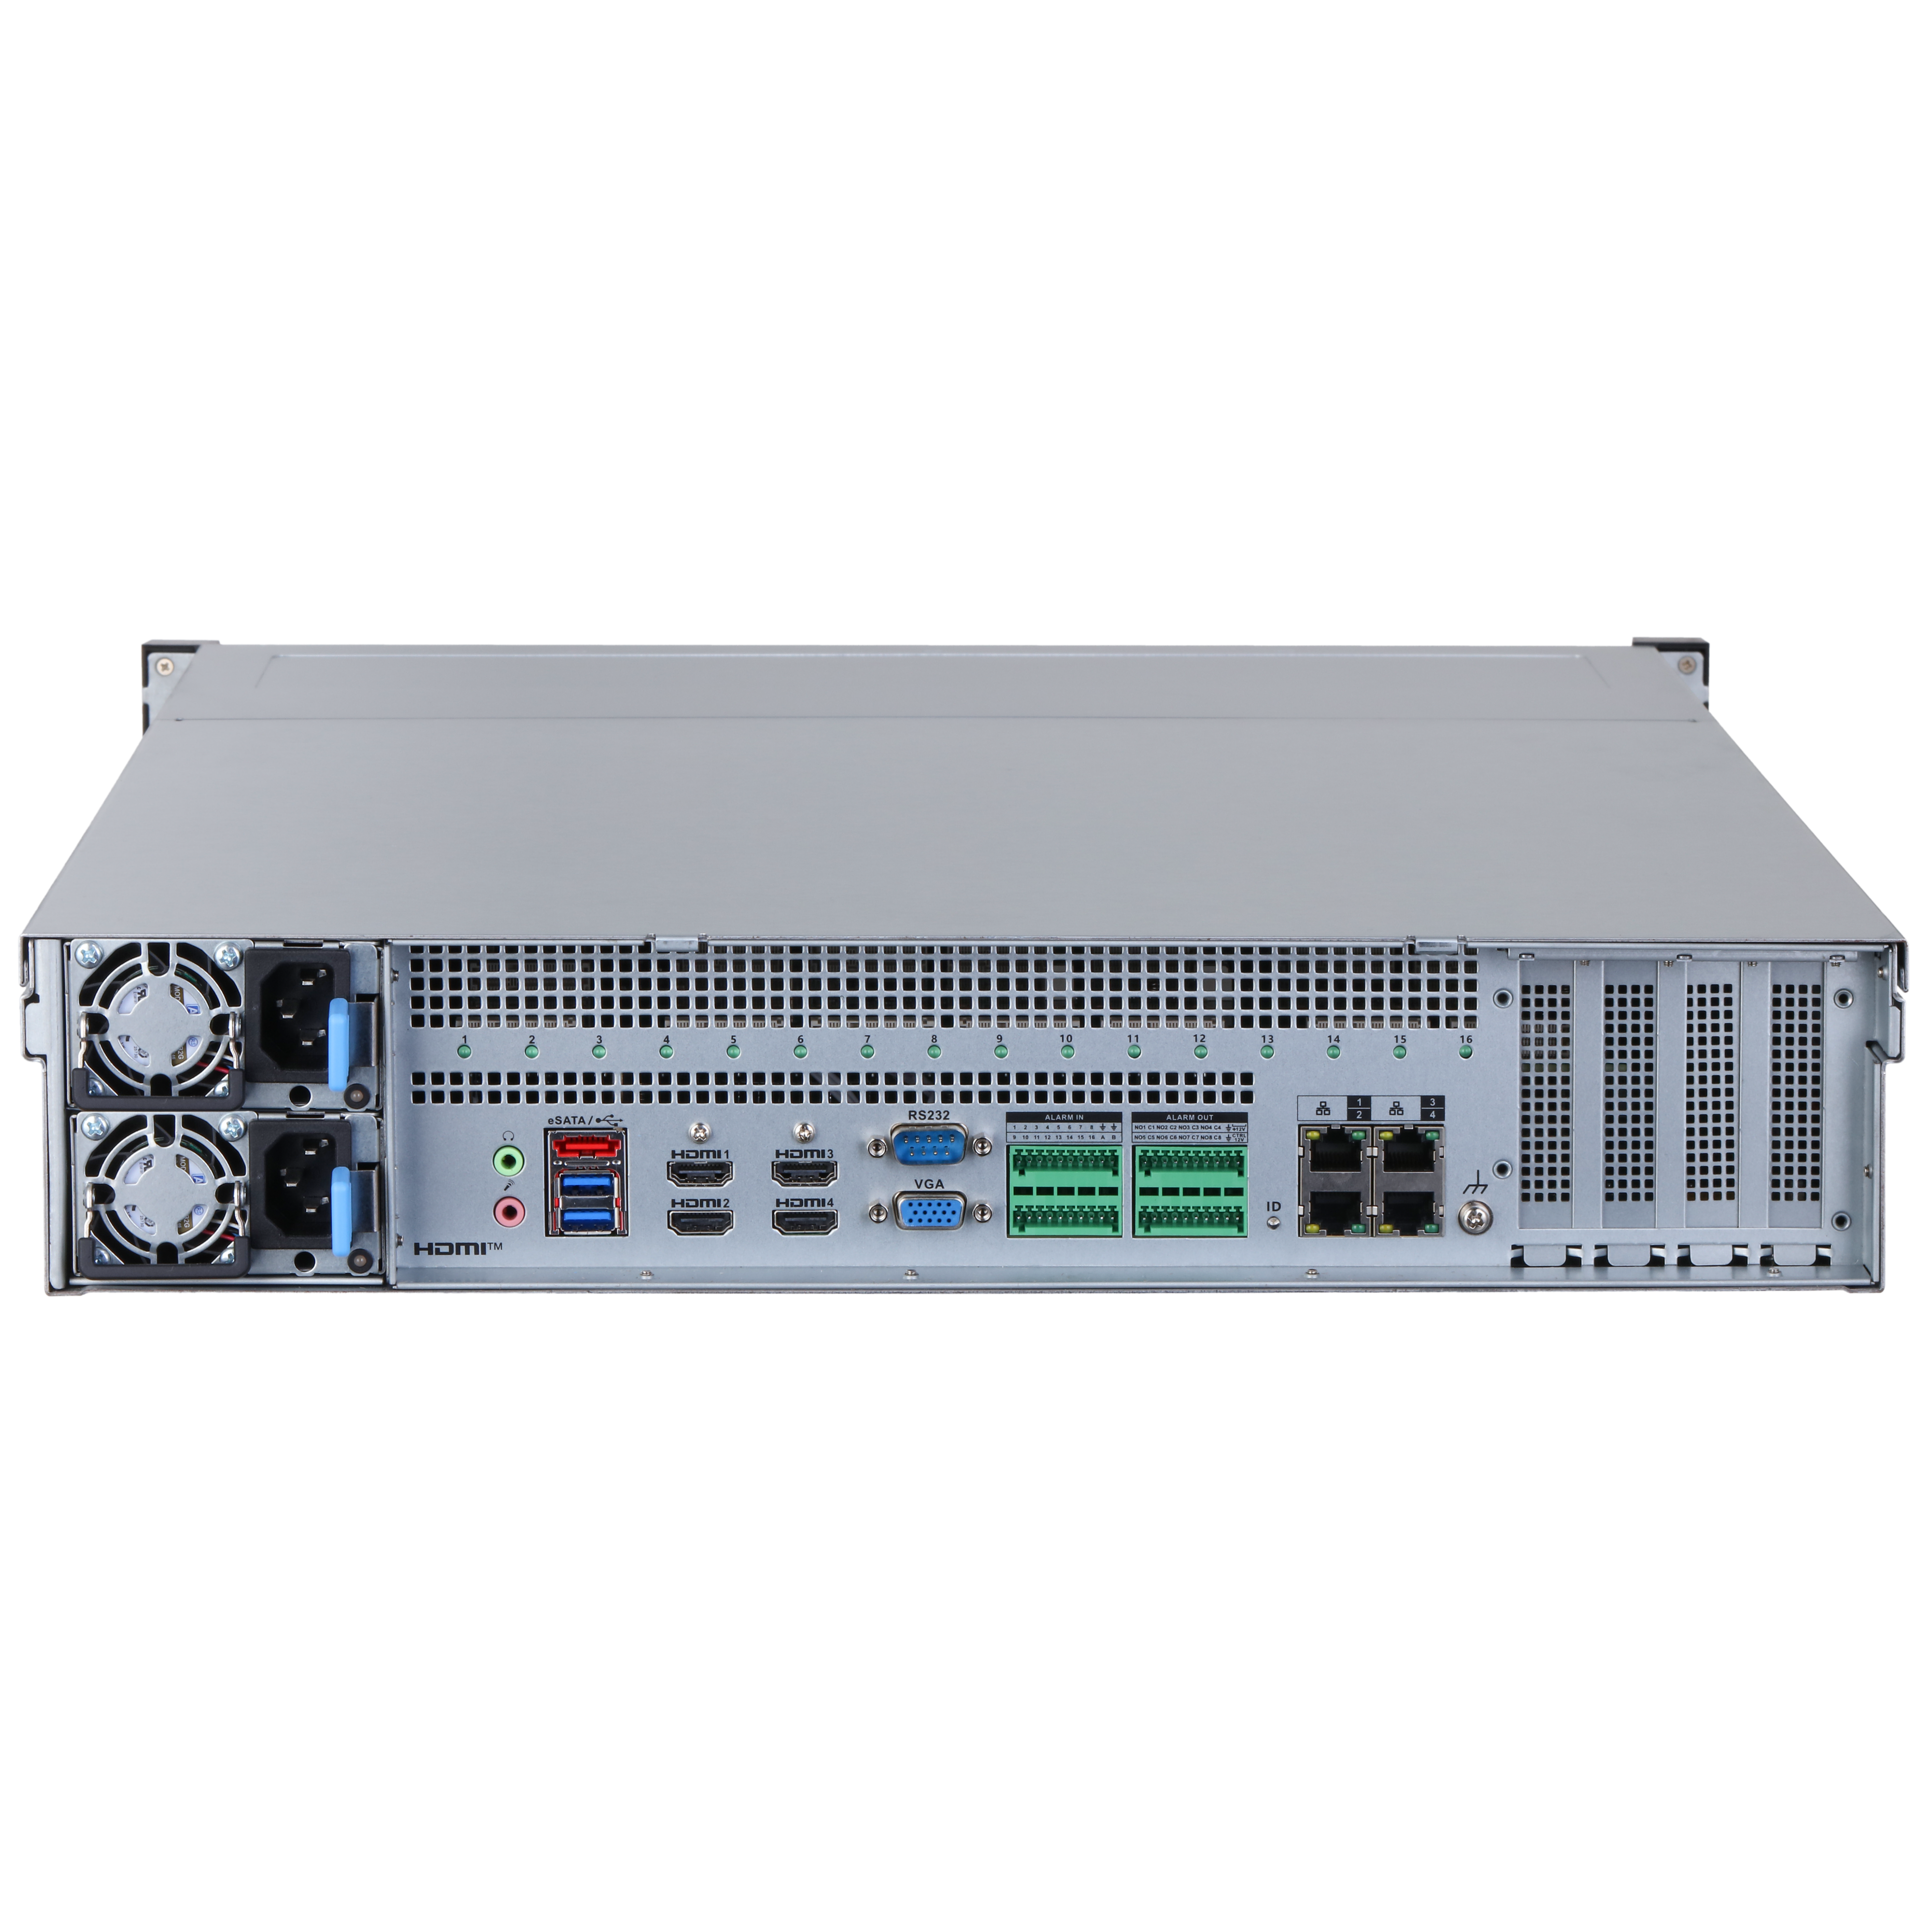 DAHUA IVSS7112R-4I 128CH 2U Intelligent Video Surveillance Server